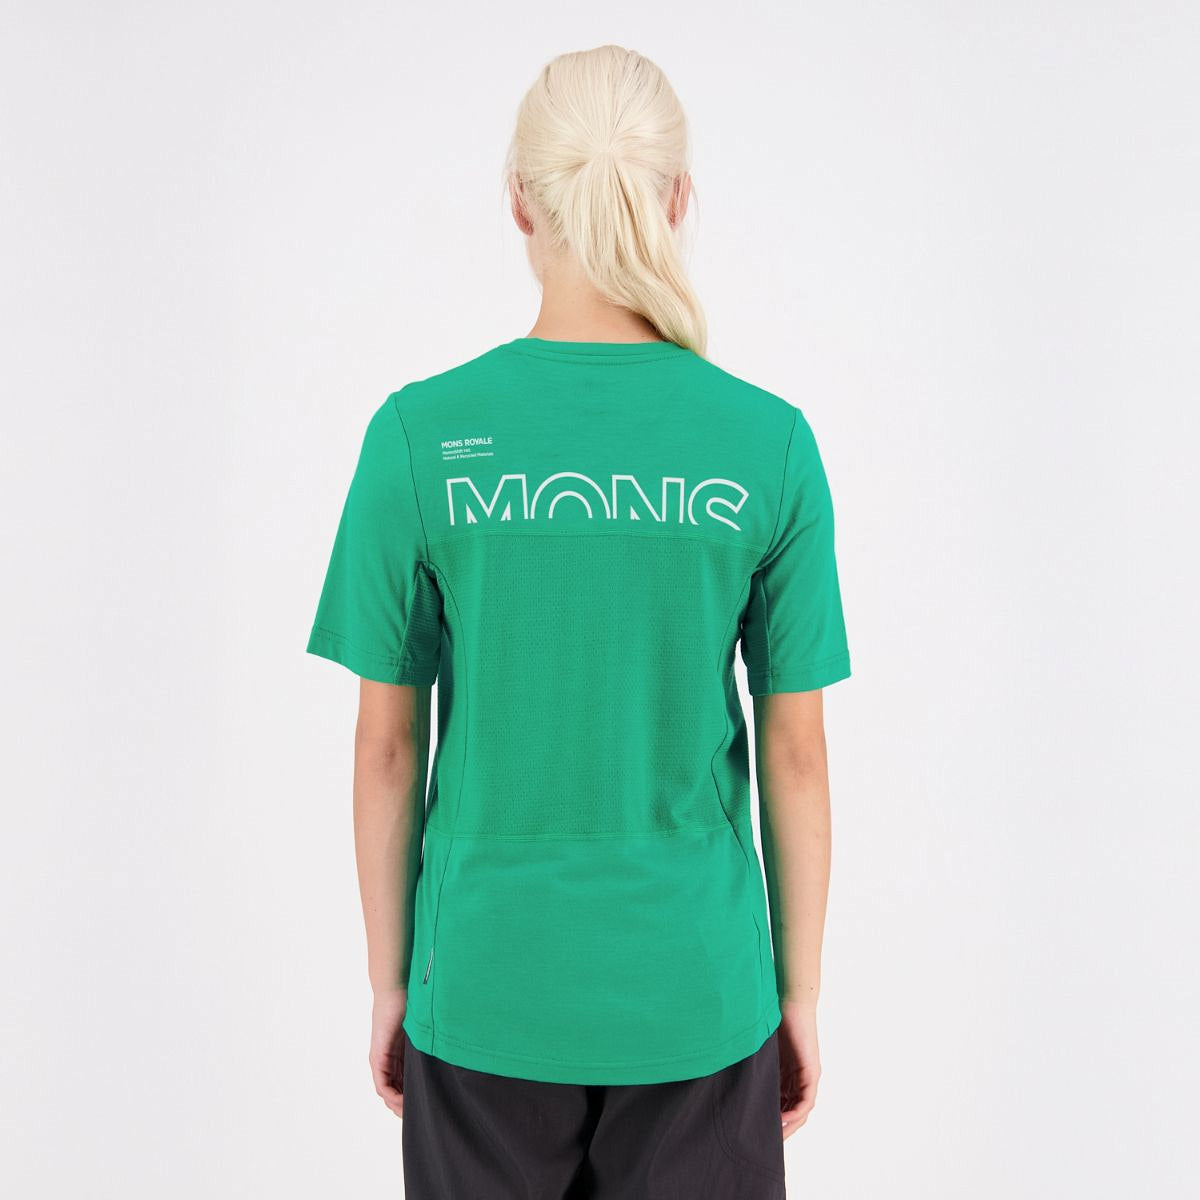 Mons Royale (Sample) - Women's Tarn Merino Shift Tee - Pop Green